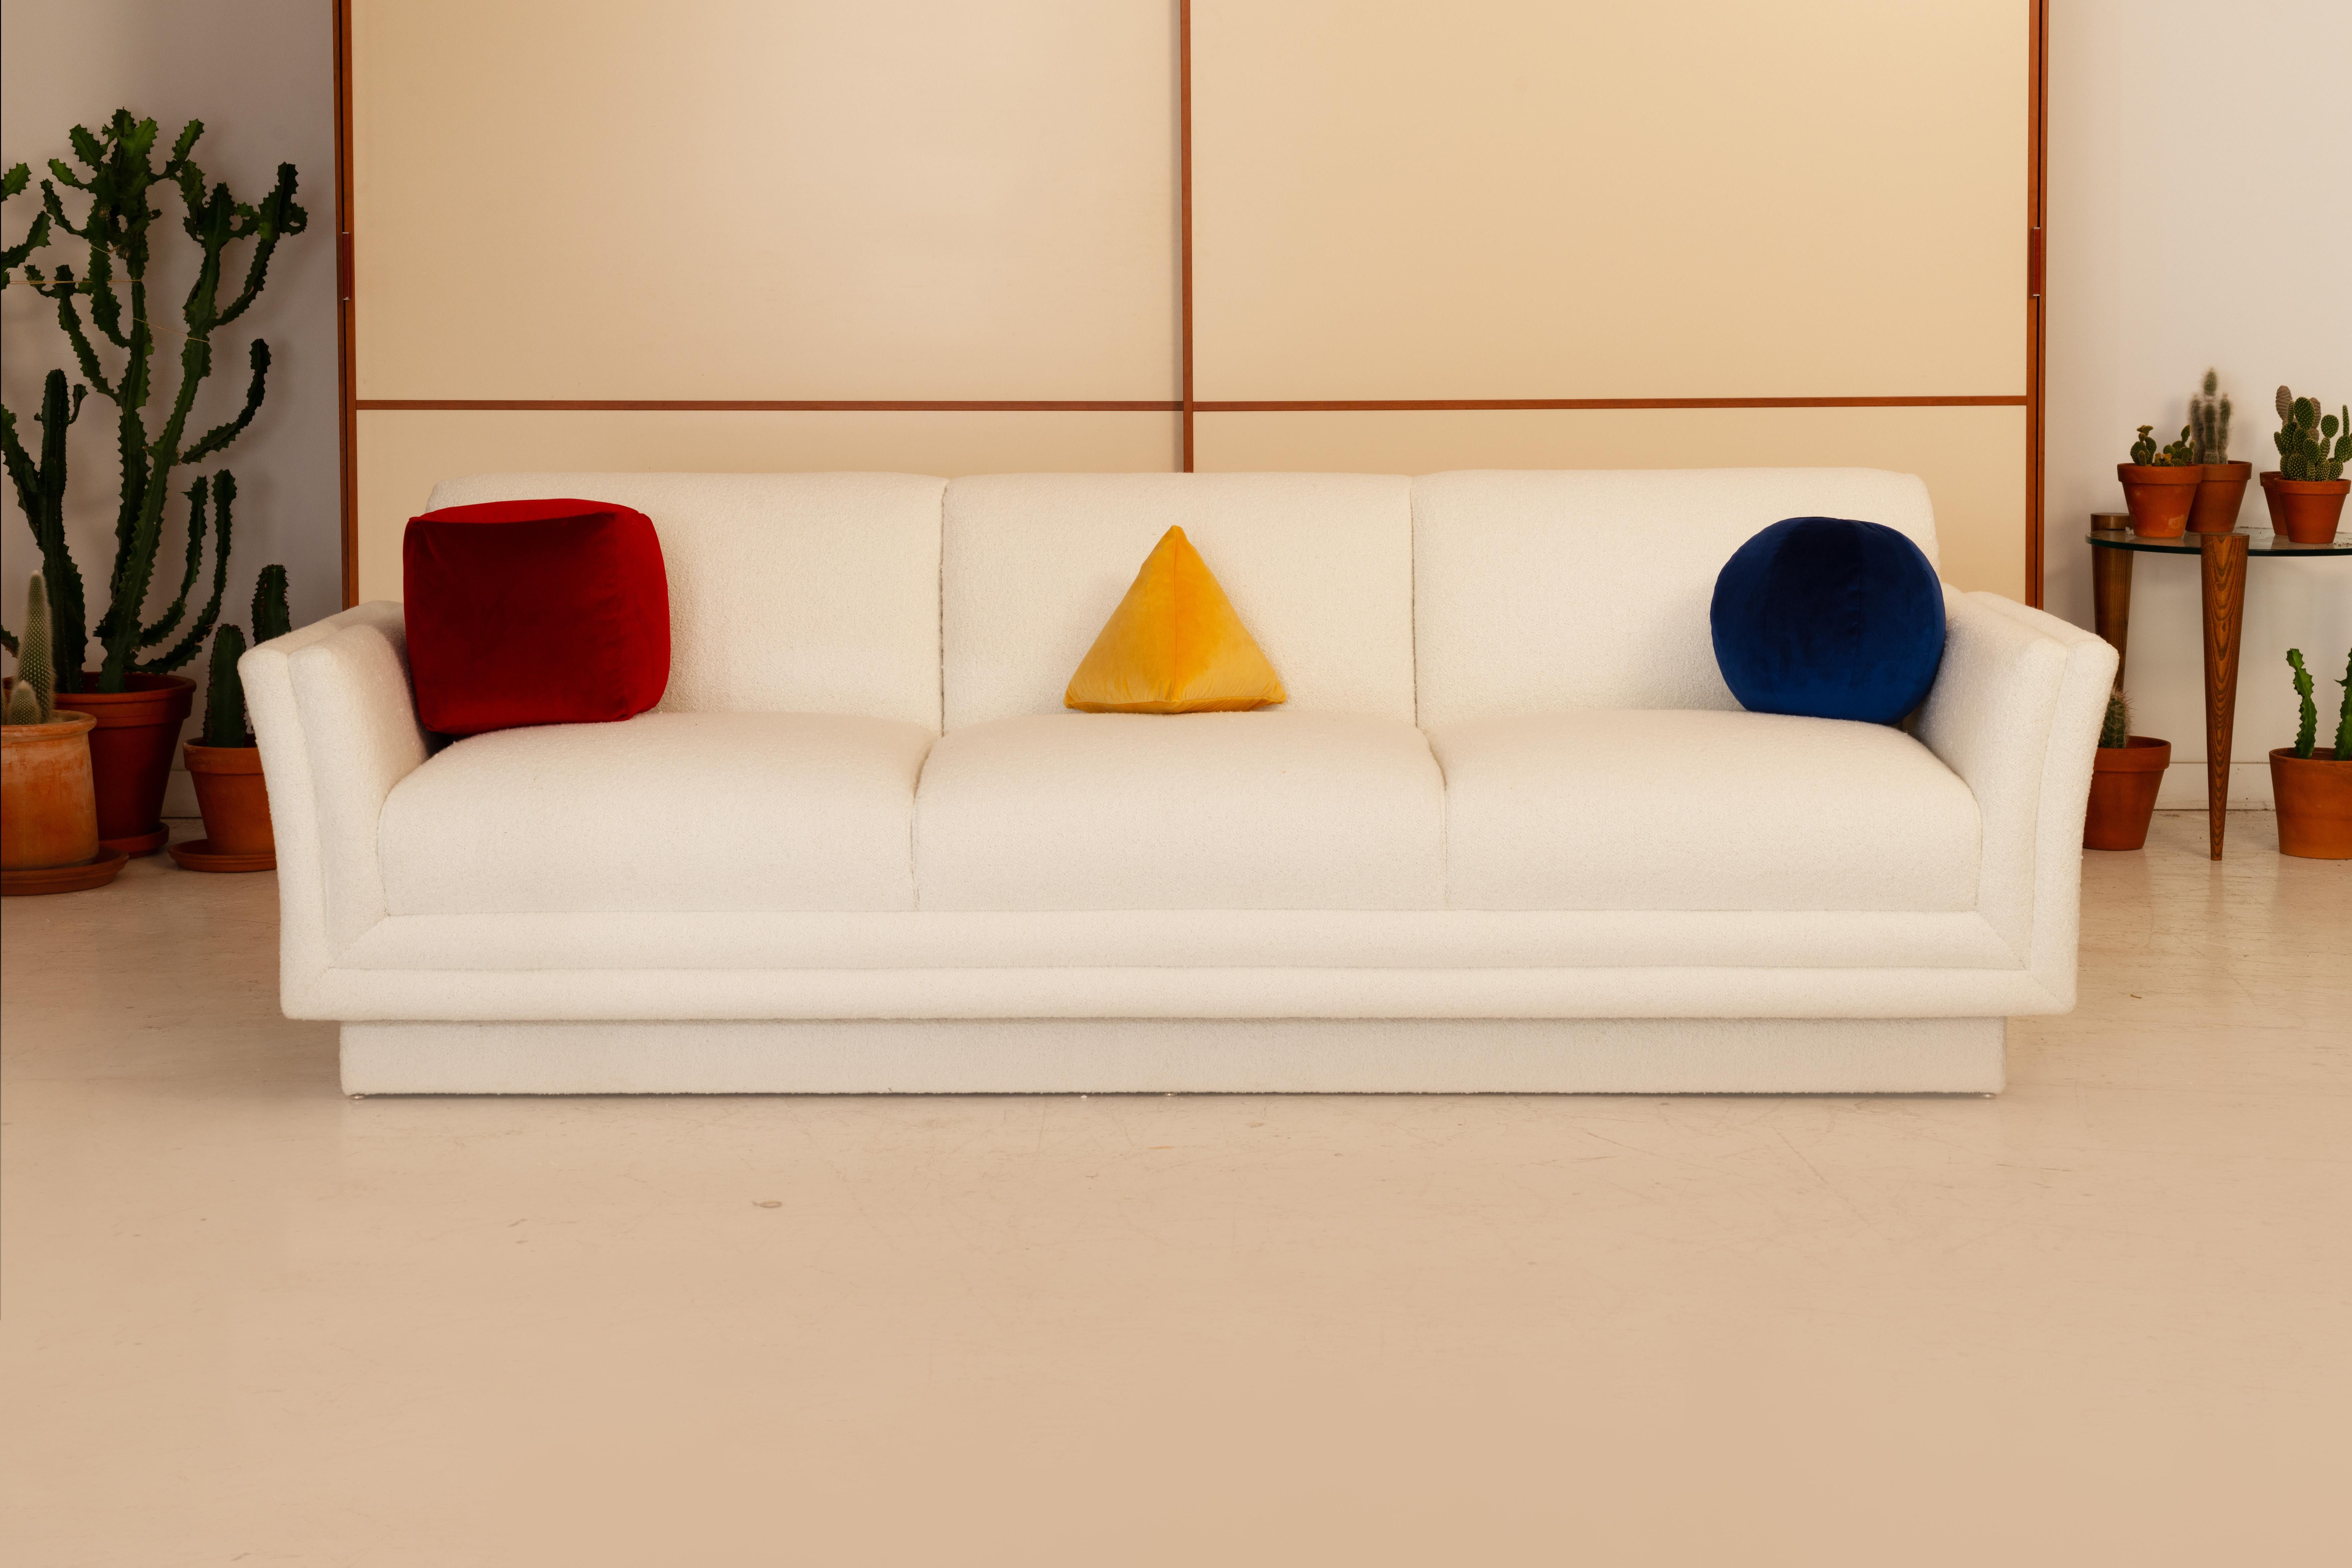 Verschönern Sie Ihren Raum mit unserem Trio von Bauhaus-inspirierten Kissen. Jedes Kissen ist sorgfältig handgefertigt und mit luxuriösem Kensington-Polyester-Samt umhüllt. Diese Collection'S zeigt einen leuchtend roten Würfel, eine beruhigende